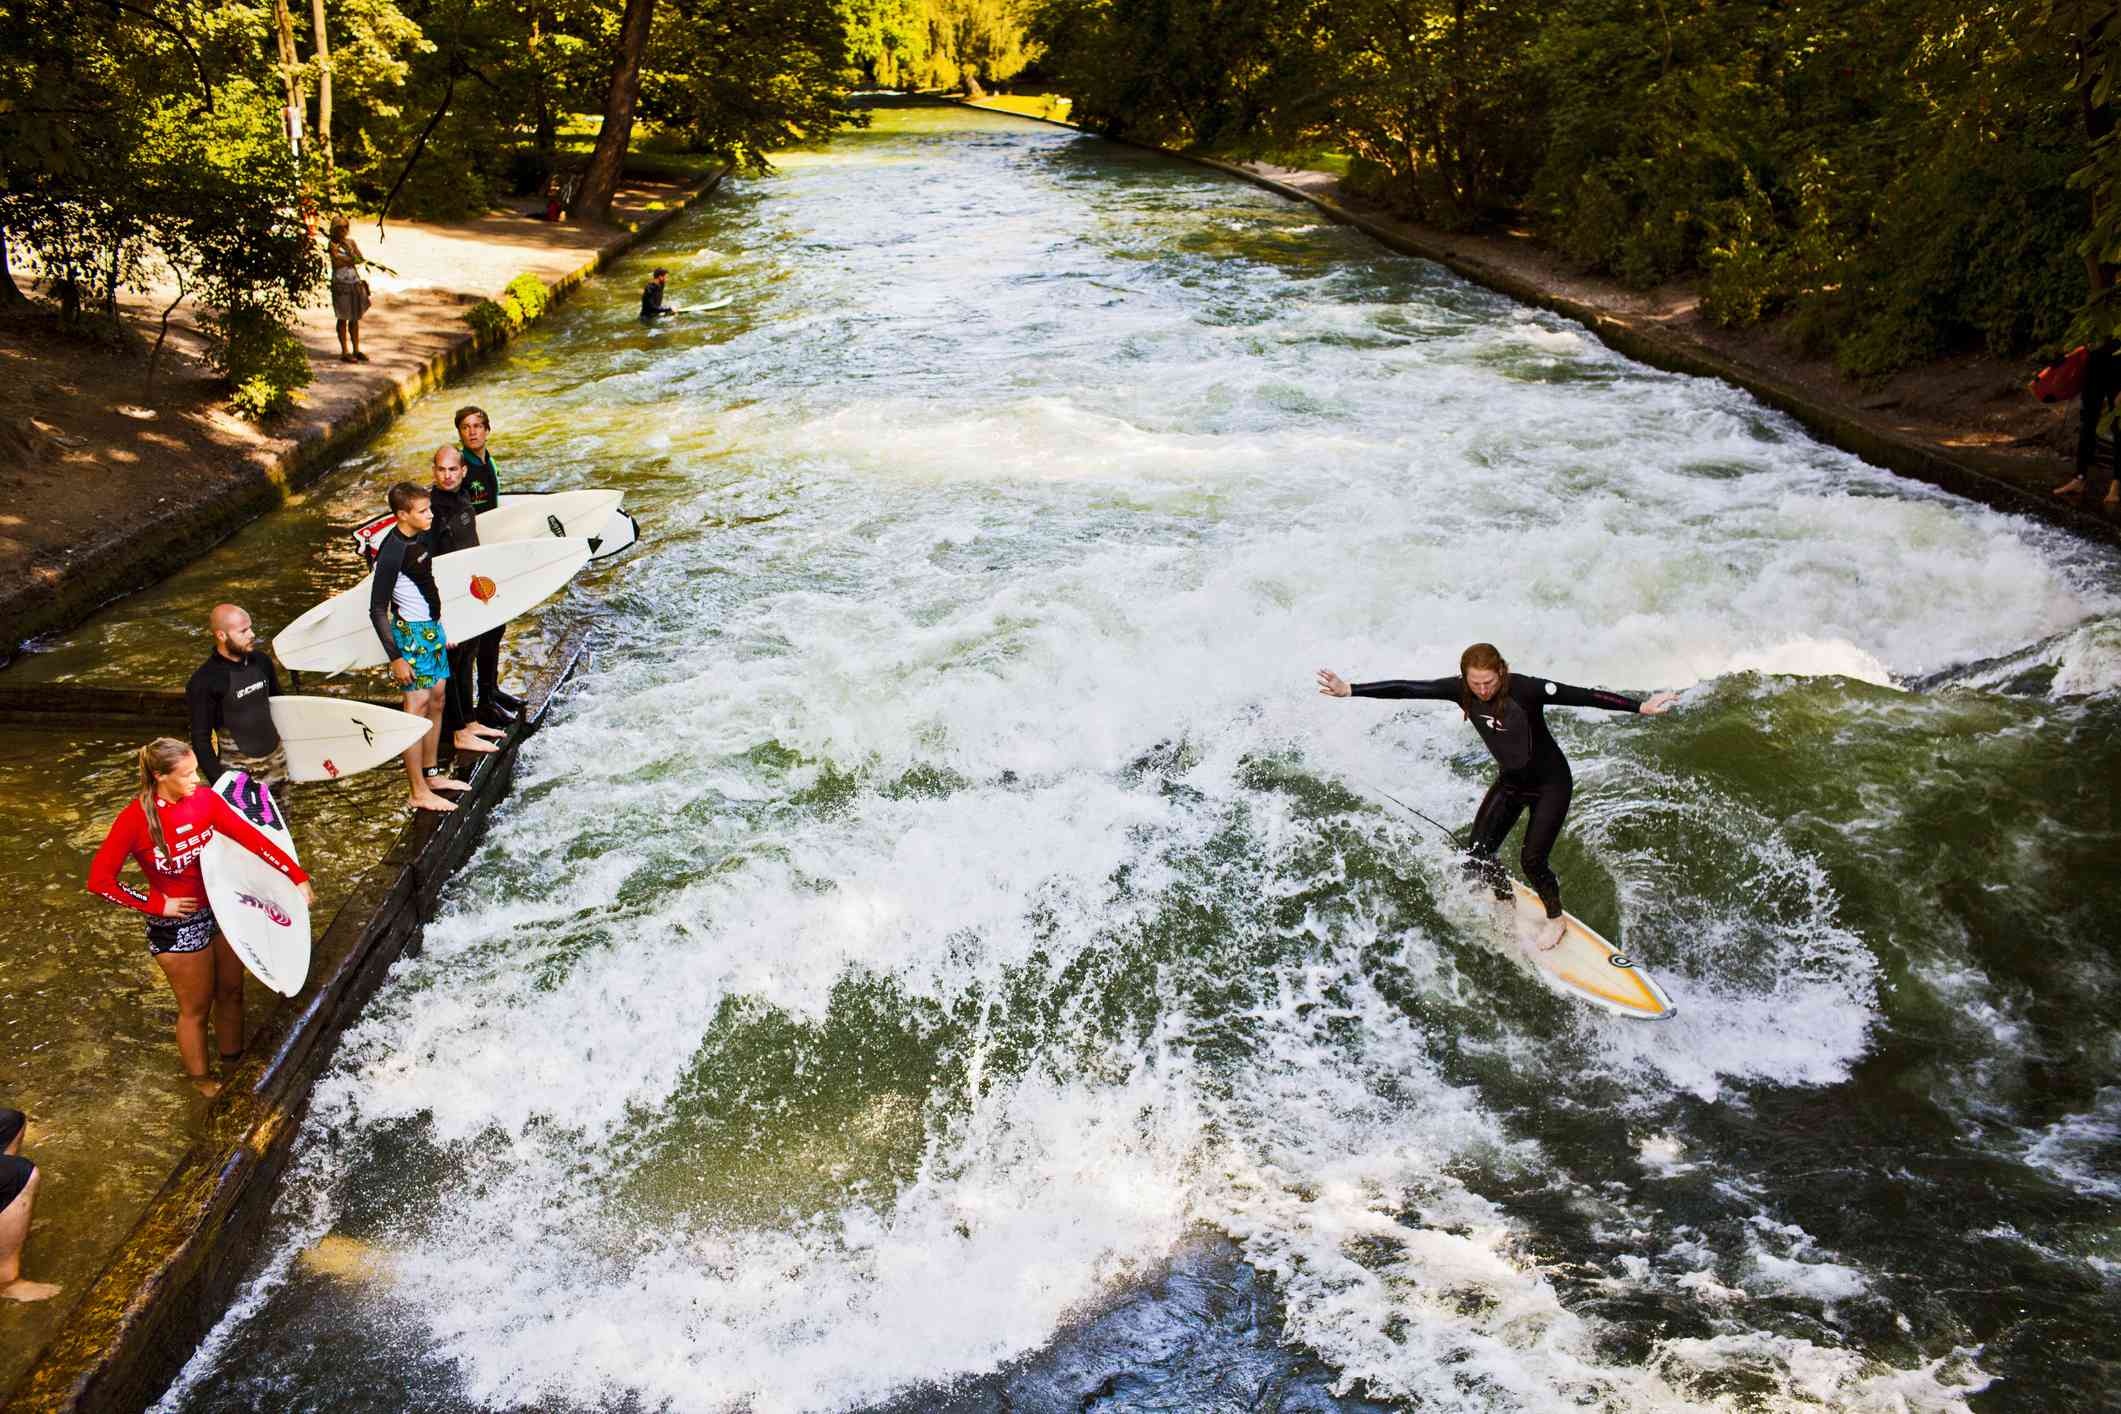 El agua verde y brillante del río Eisbach con un surfista montado en una moto mientras otros surfistas con sus tablas se sitúan en una plataforma cercana, más abajo del río, las orillas cubiertas de verde follaje en un día soleado